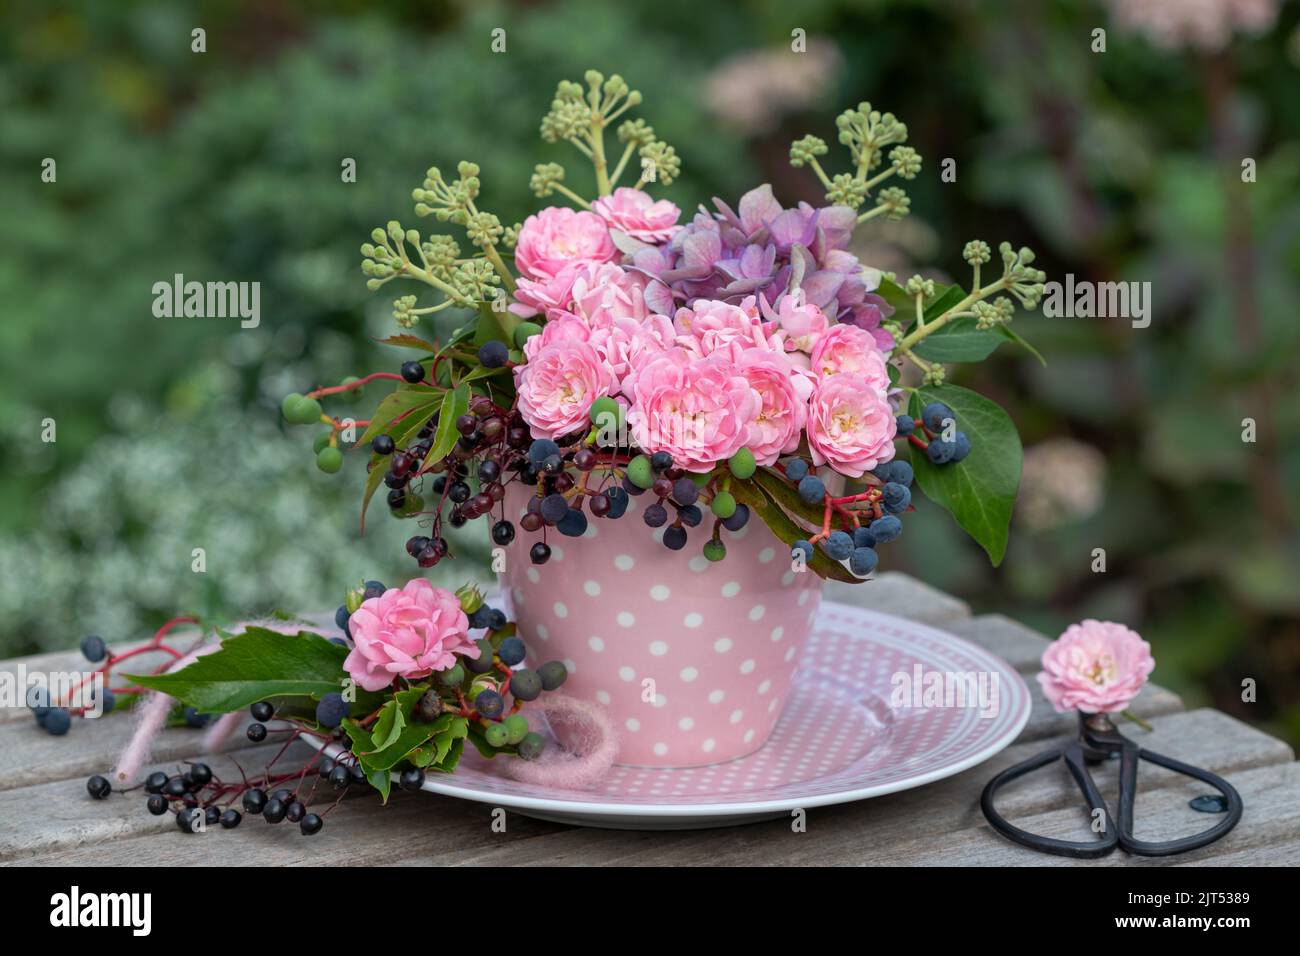 bouquet di rose rosa, fiori di ortensia, bacche di sambuco, bacche di vino selvatico e edera fruttata in tazza Foto Stock